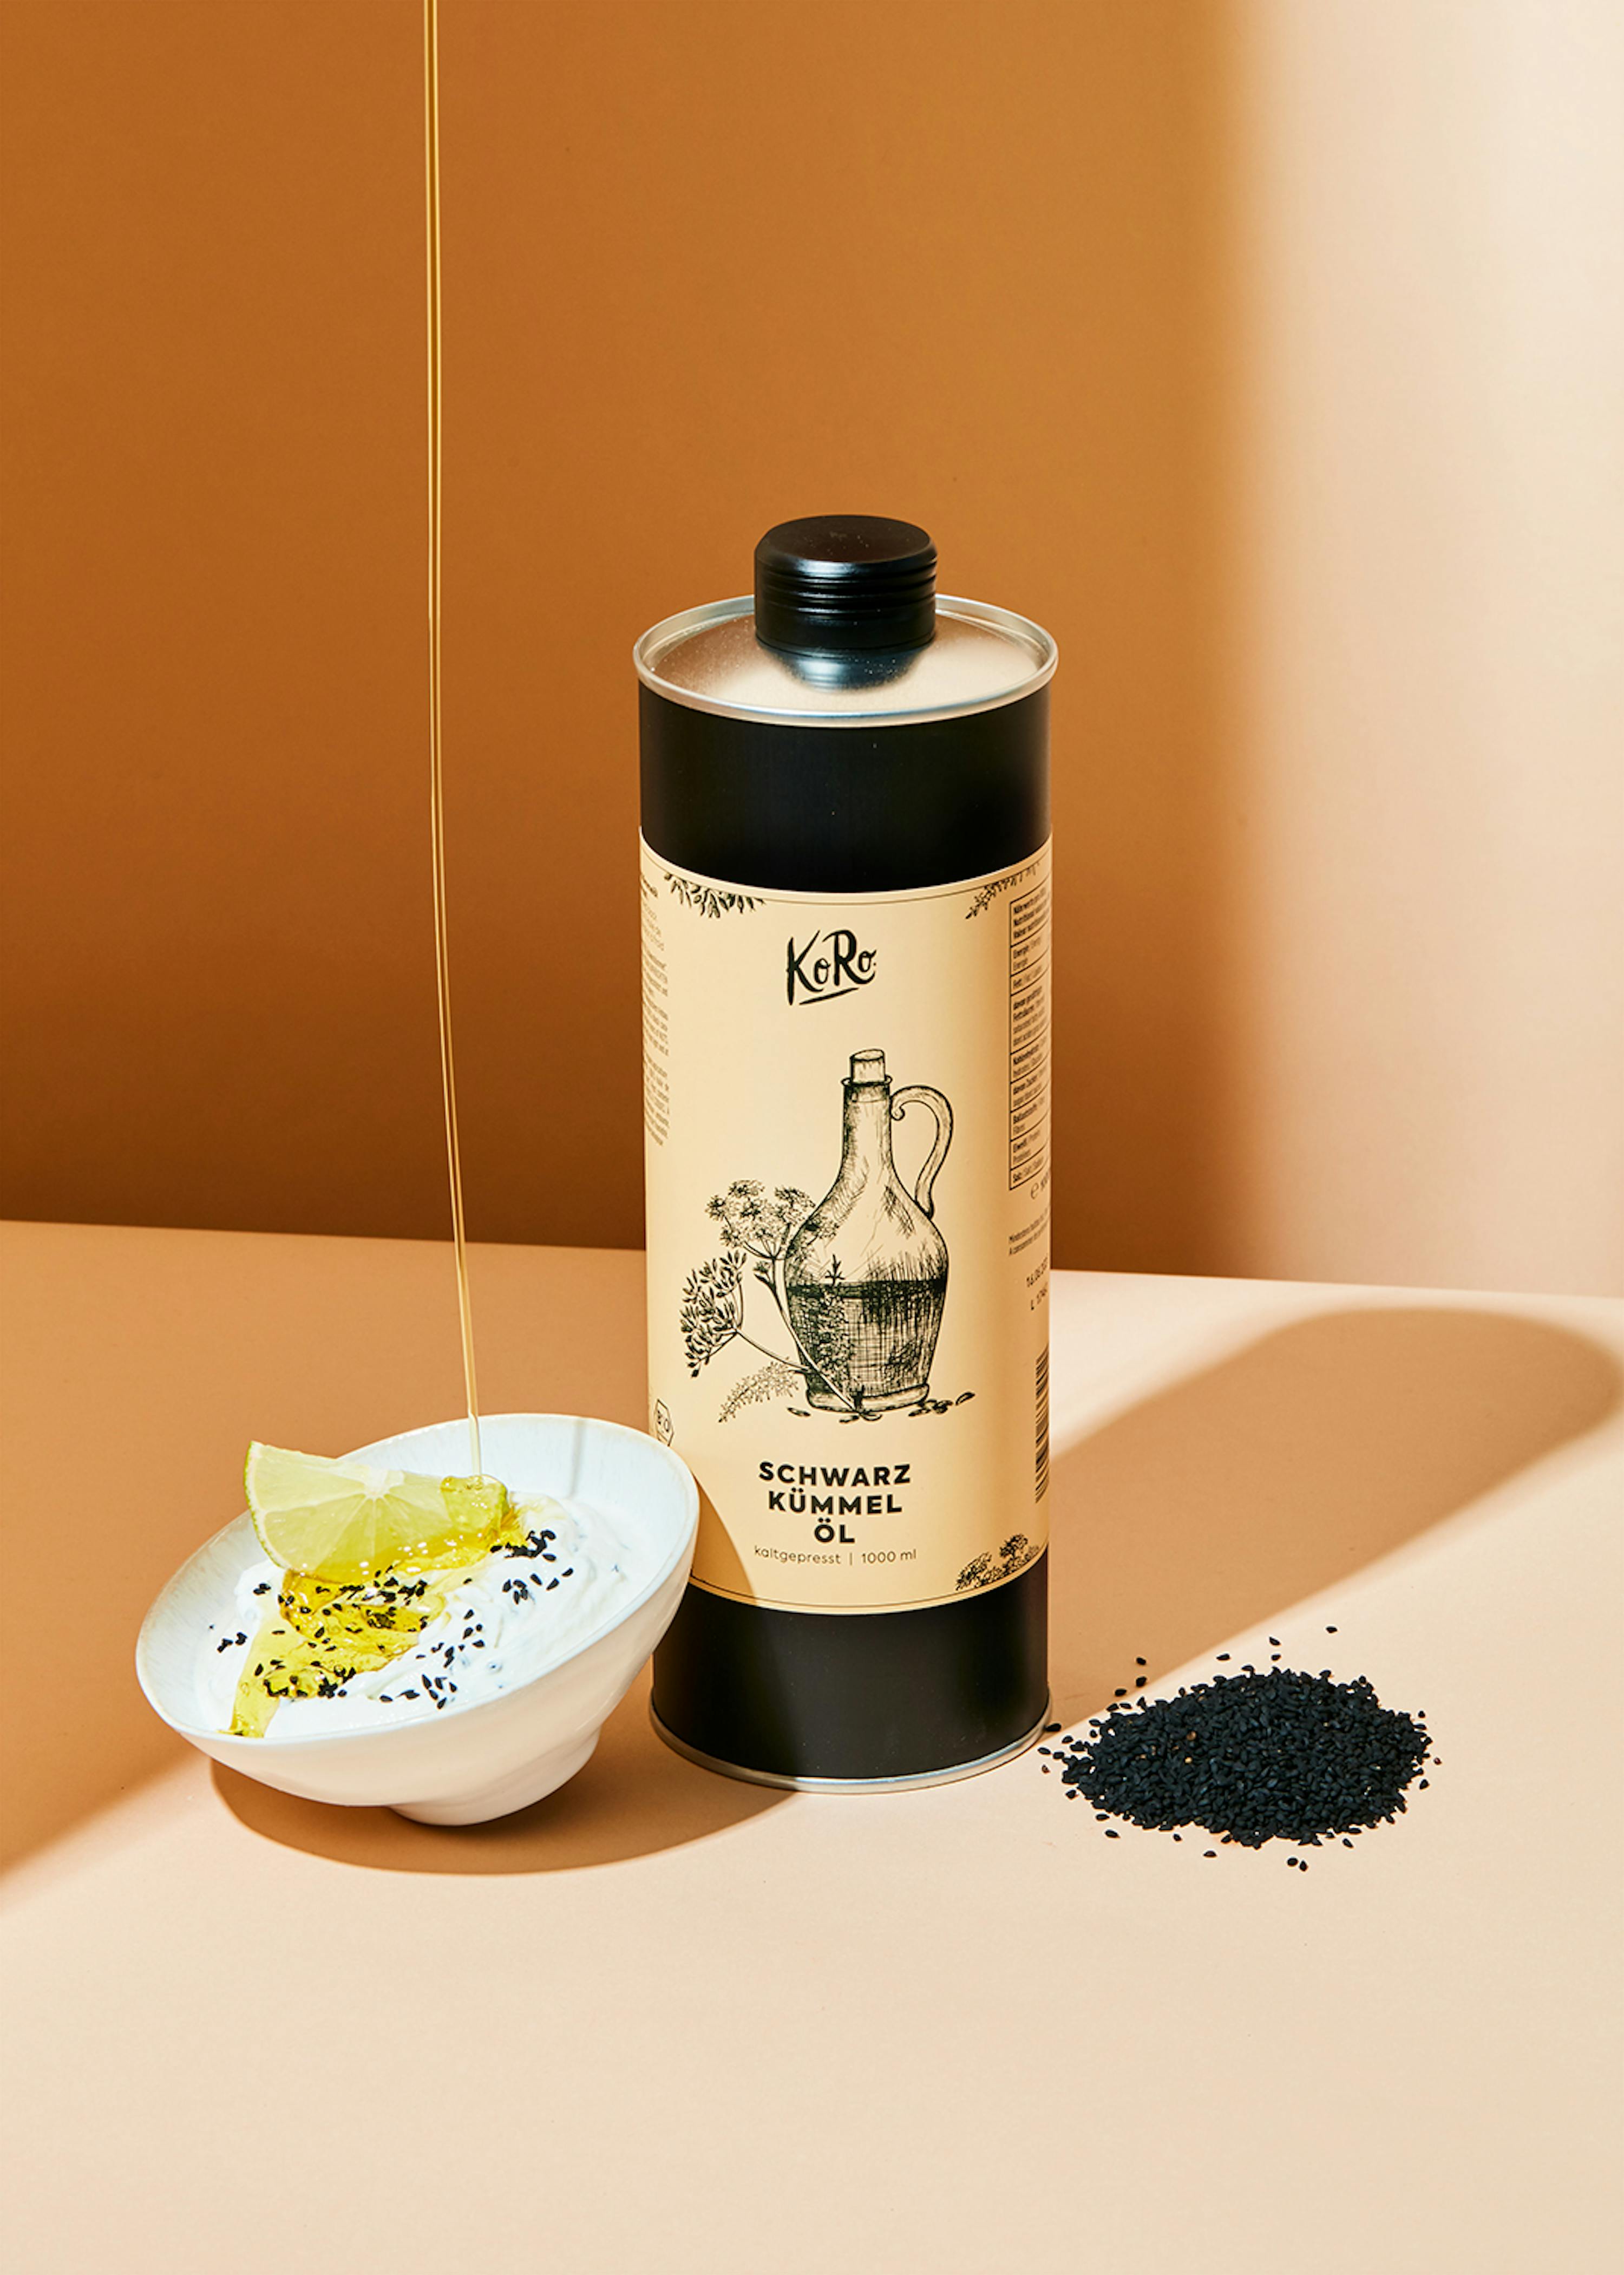 Huiles - KoRo Beurre clarifié bio (ghee) à base d'huile d'olive